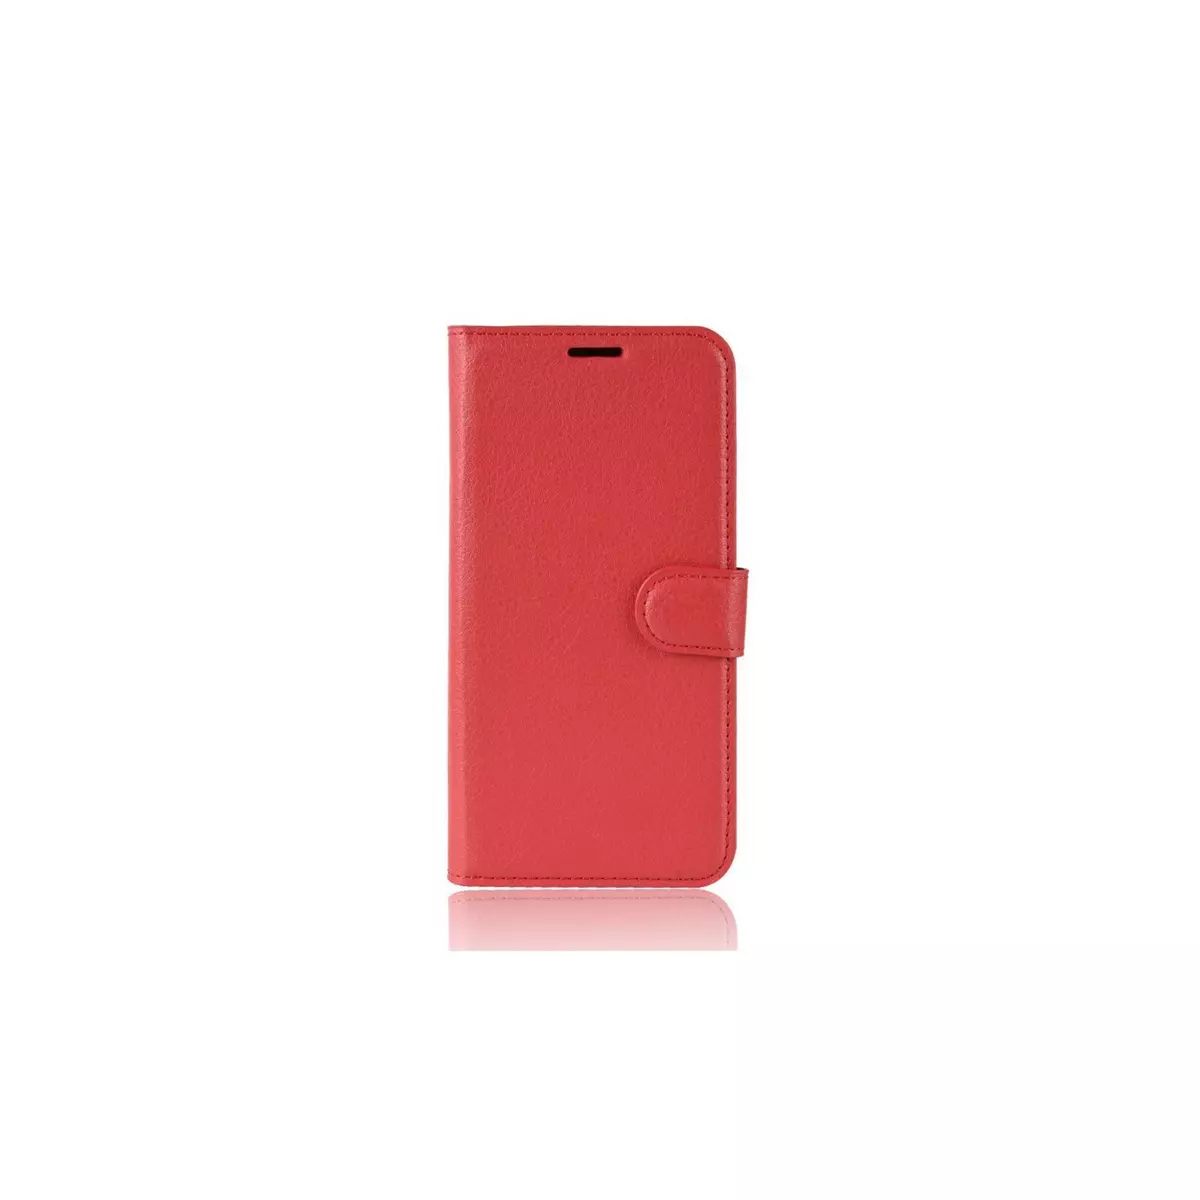 amahousse Housse rouge OnePlus 7 portefeuille grainé et languette aimantée